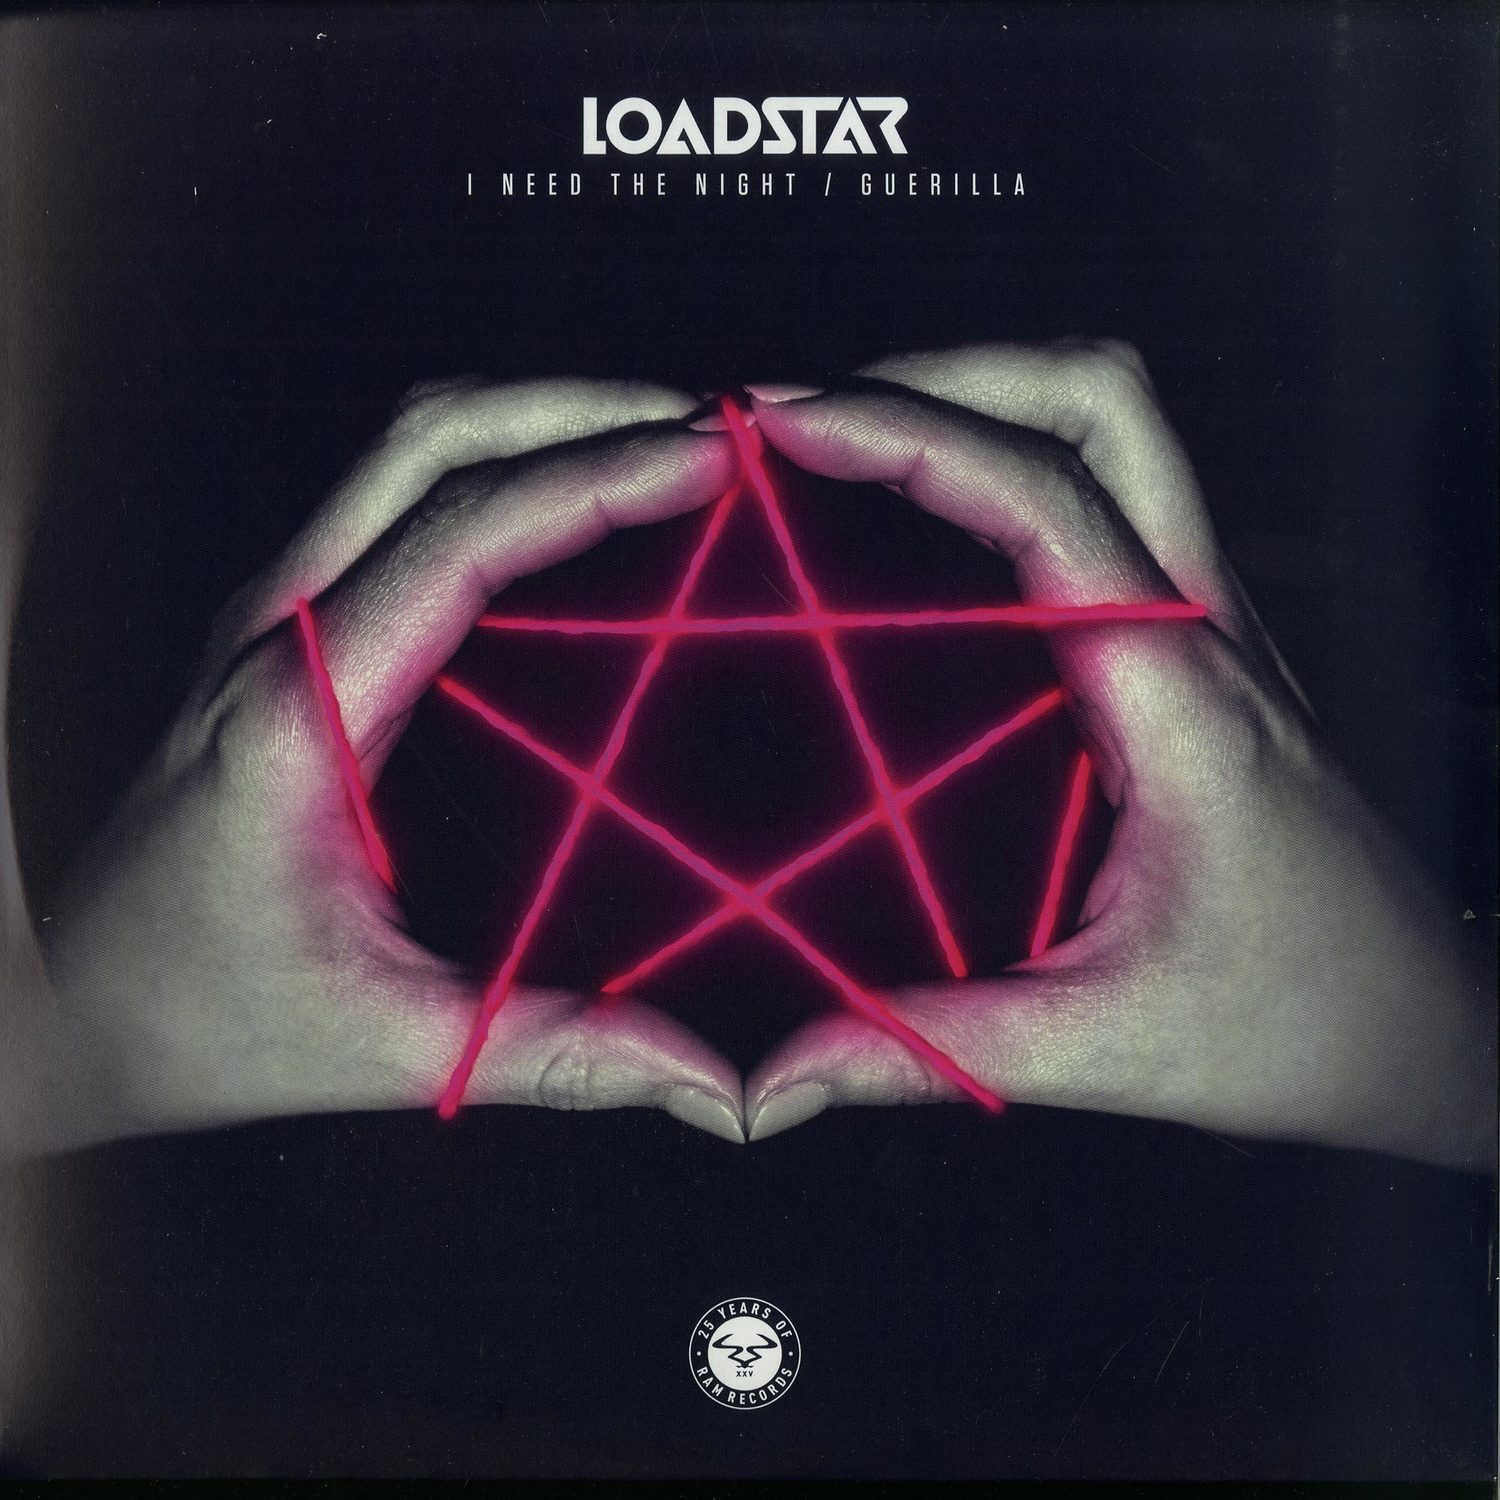 Loadstar - I NEED THE NIGHT / GUERILLA